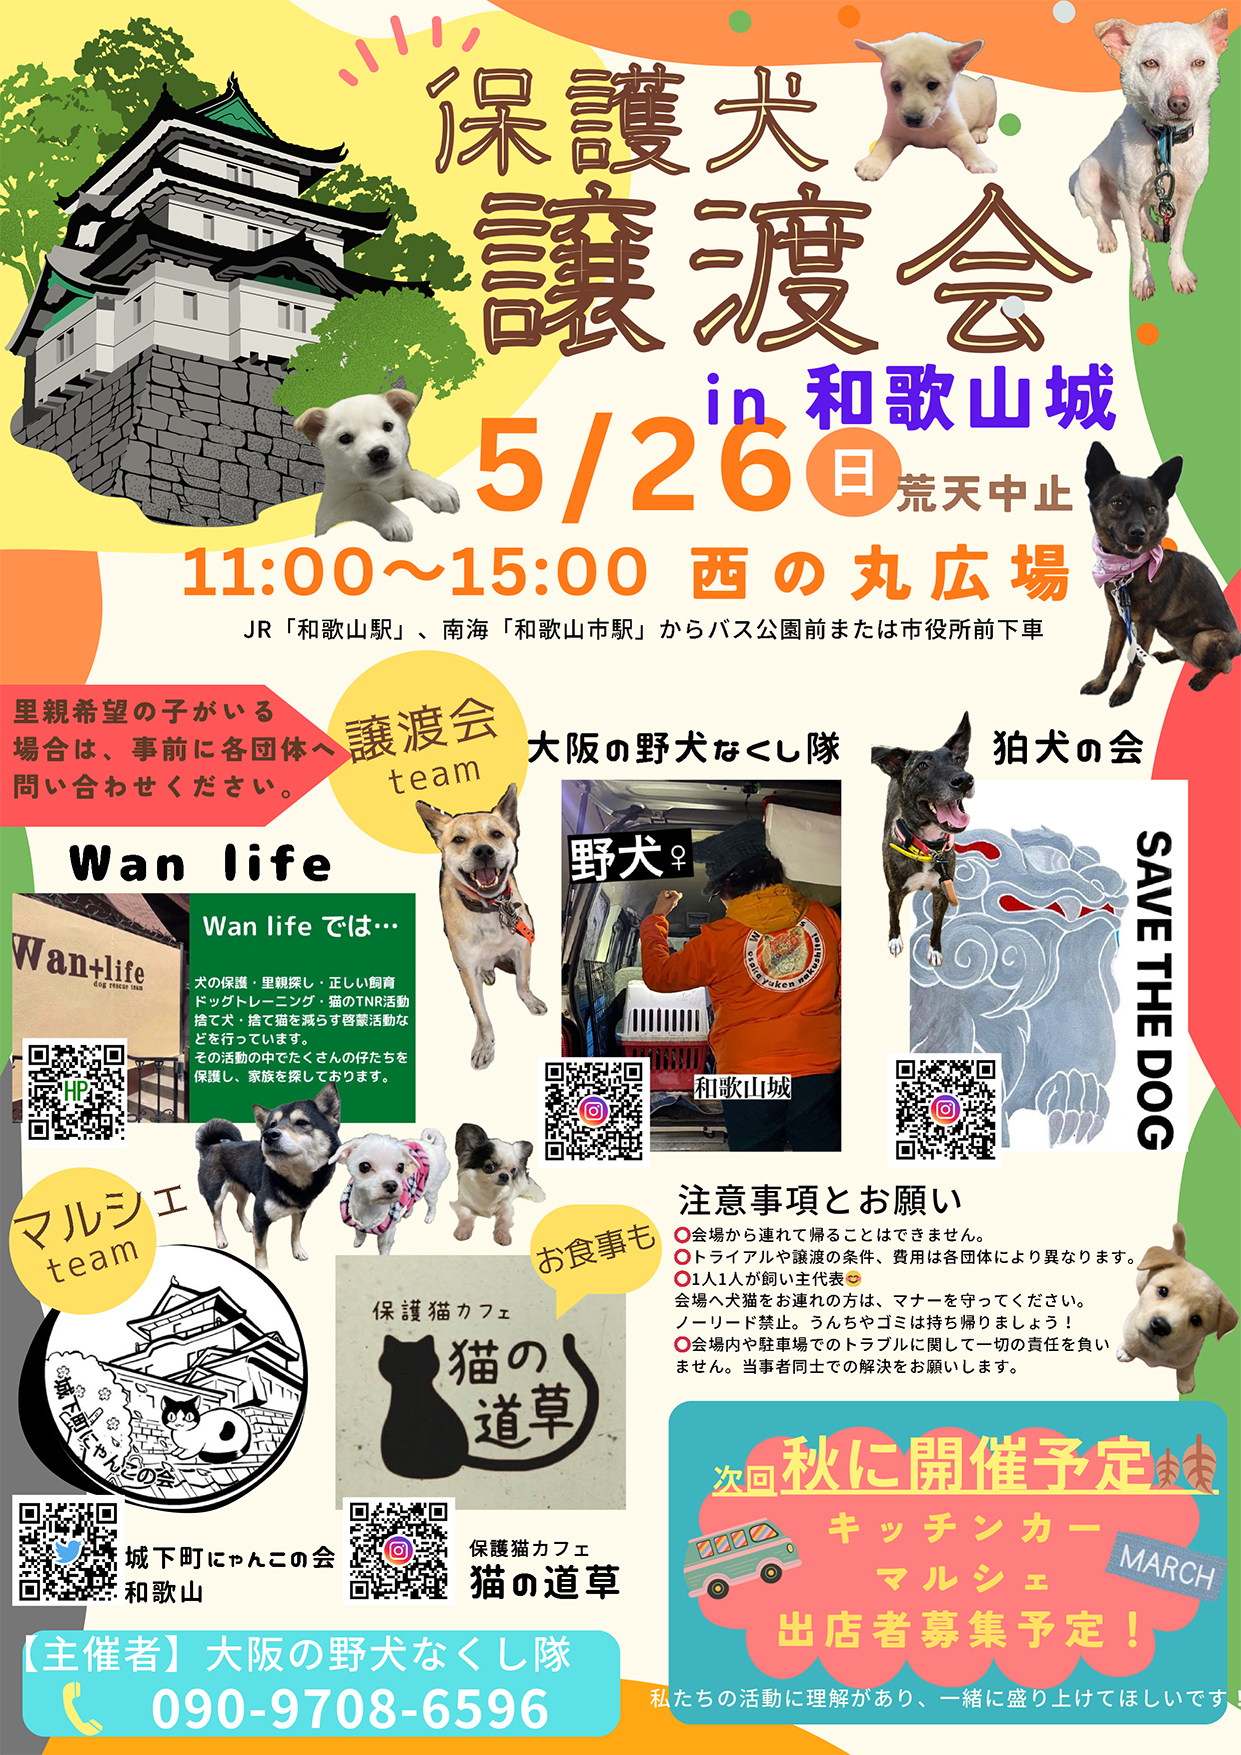 和歌山城西の丸広場で『保護犬譲渡会』が開催！